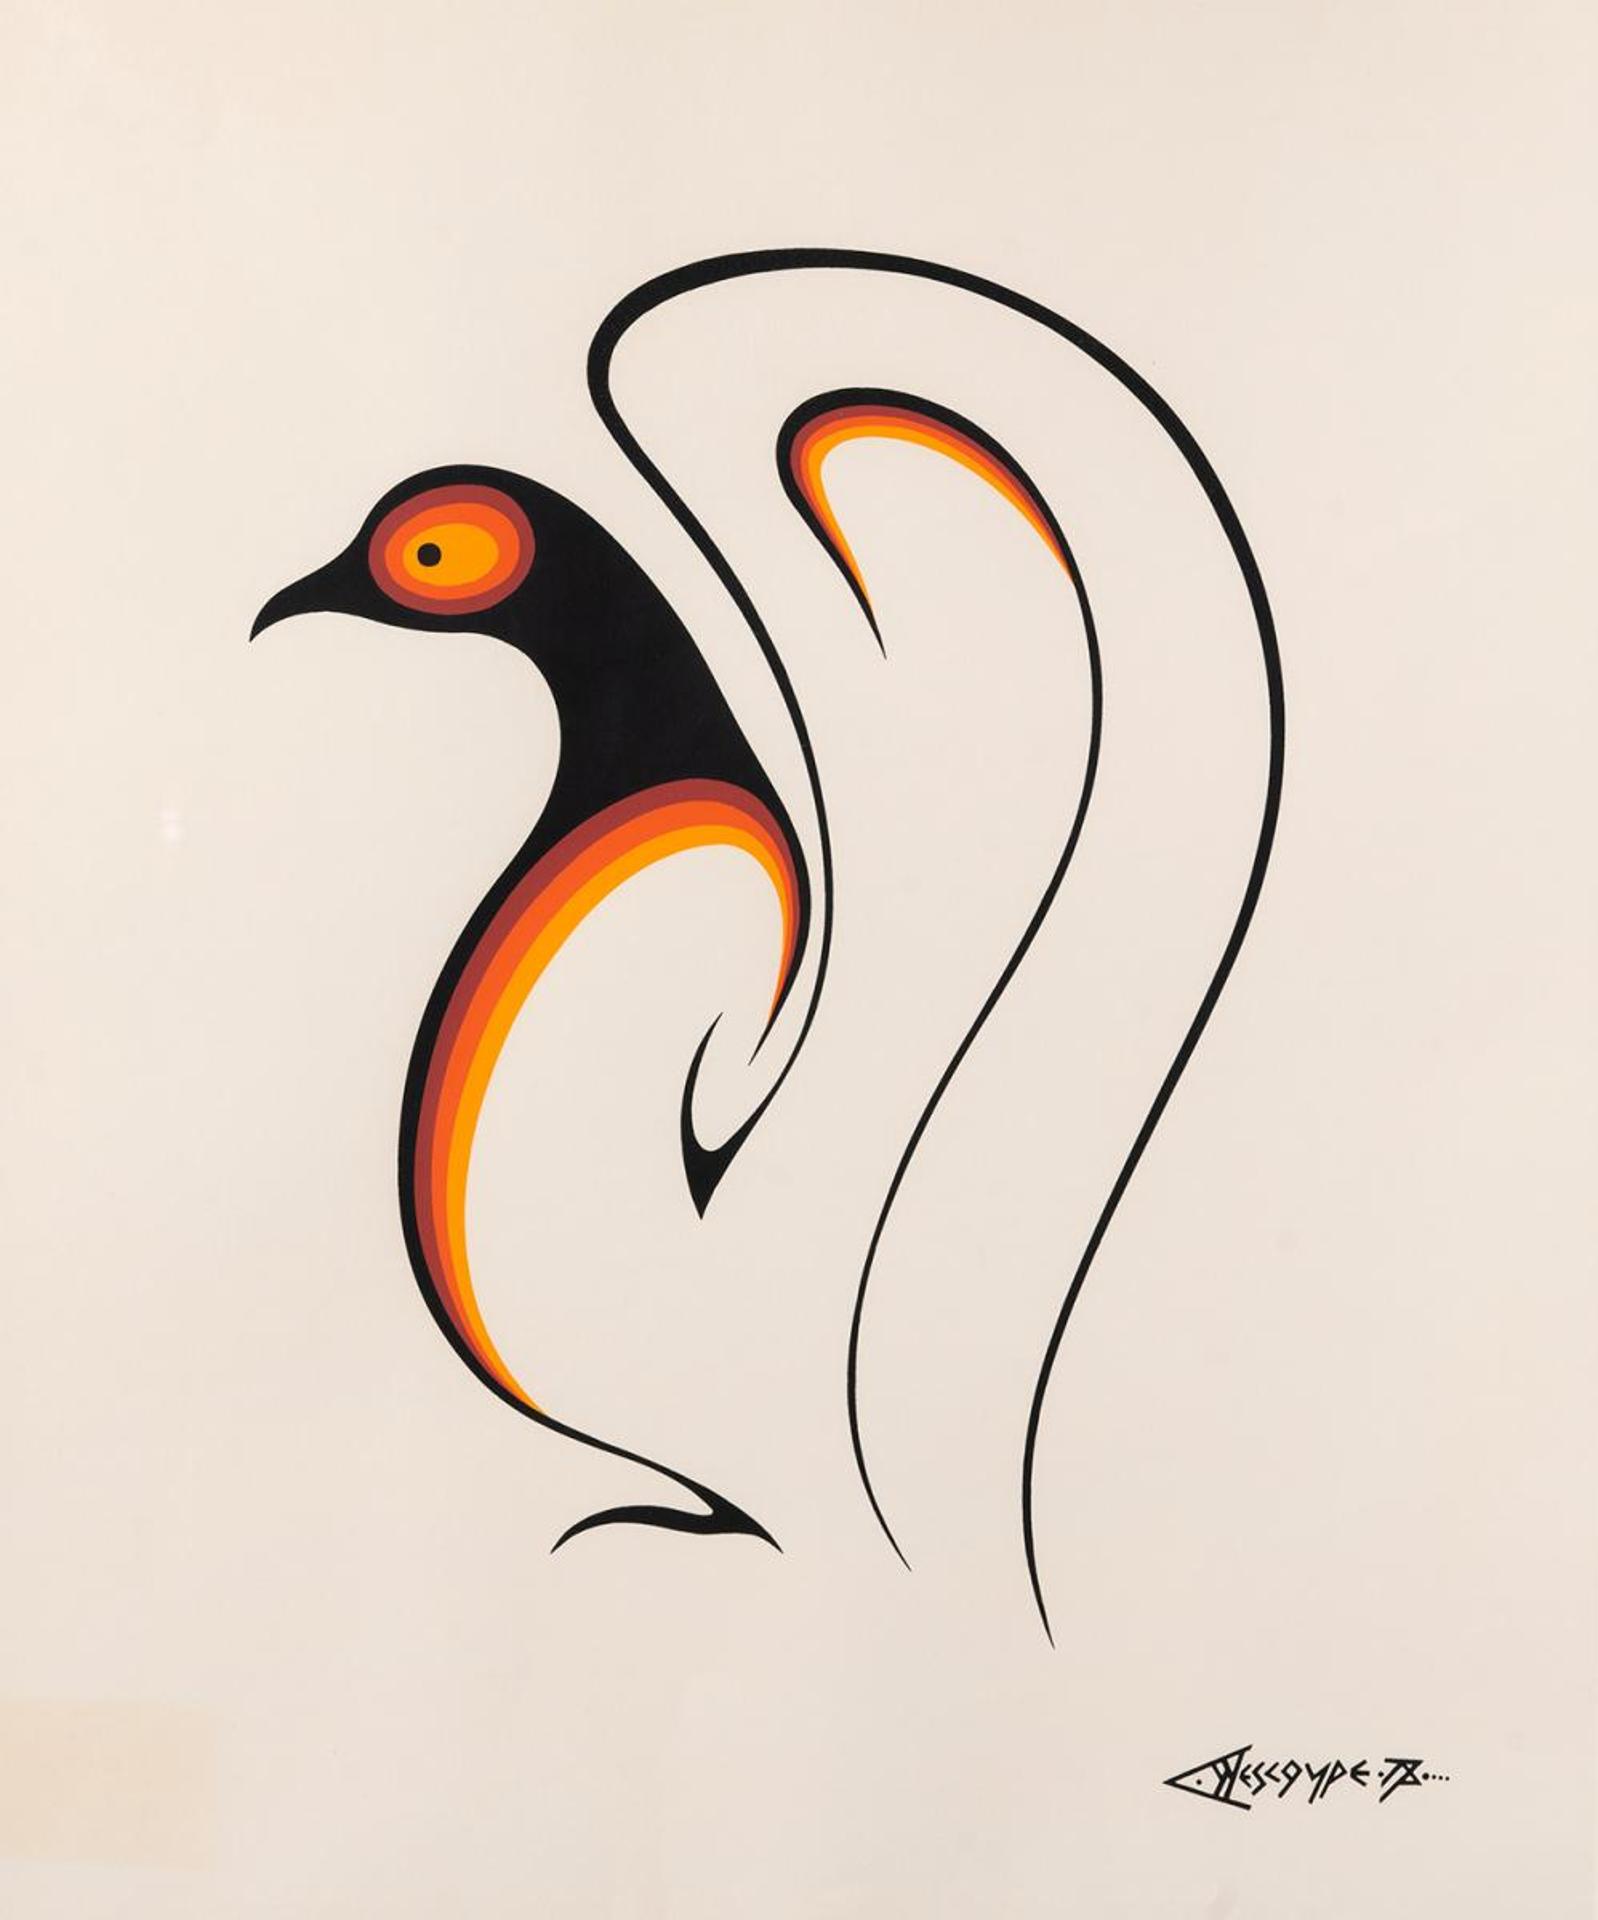 Clemence Wescoupe (1951-2018) - Untitled - Orange Bird